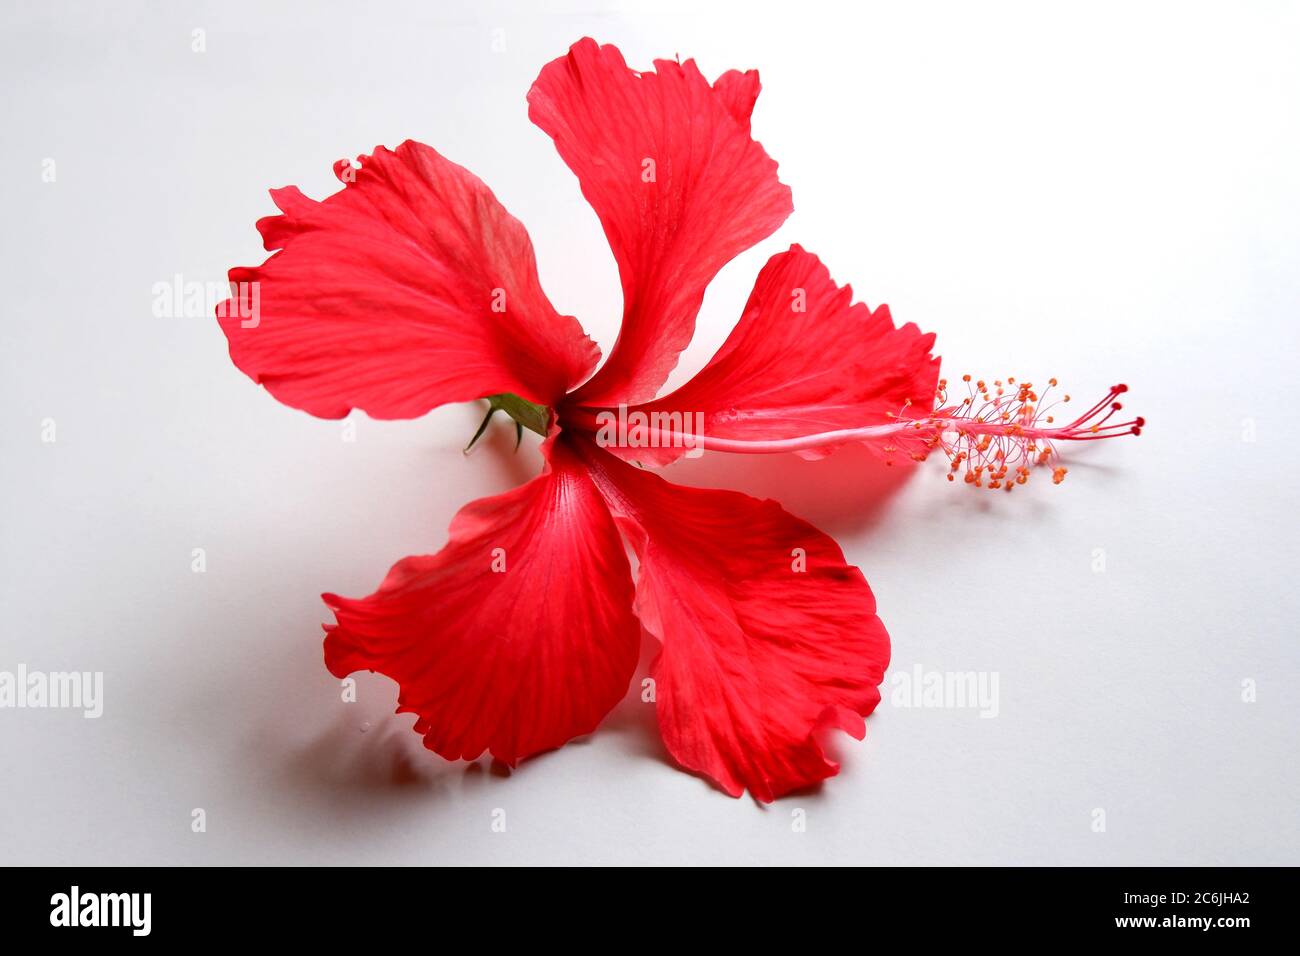 Hibiskusblüten auf weißem Grund sind rote Hibiskusblüten, die für ihre großen, bunten Blüten bekannt sind. Diese Blüten können eine dekorative Ergänzung sein Stockfoto